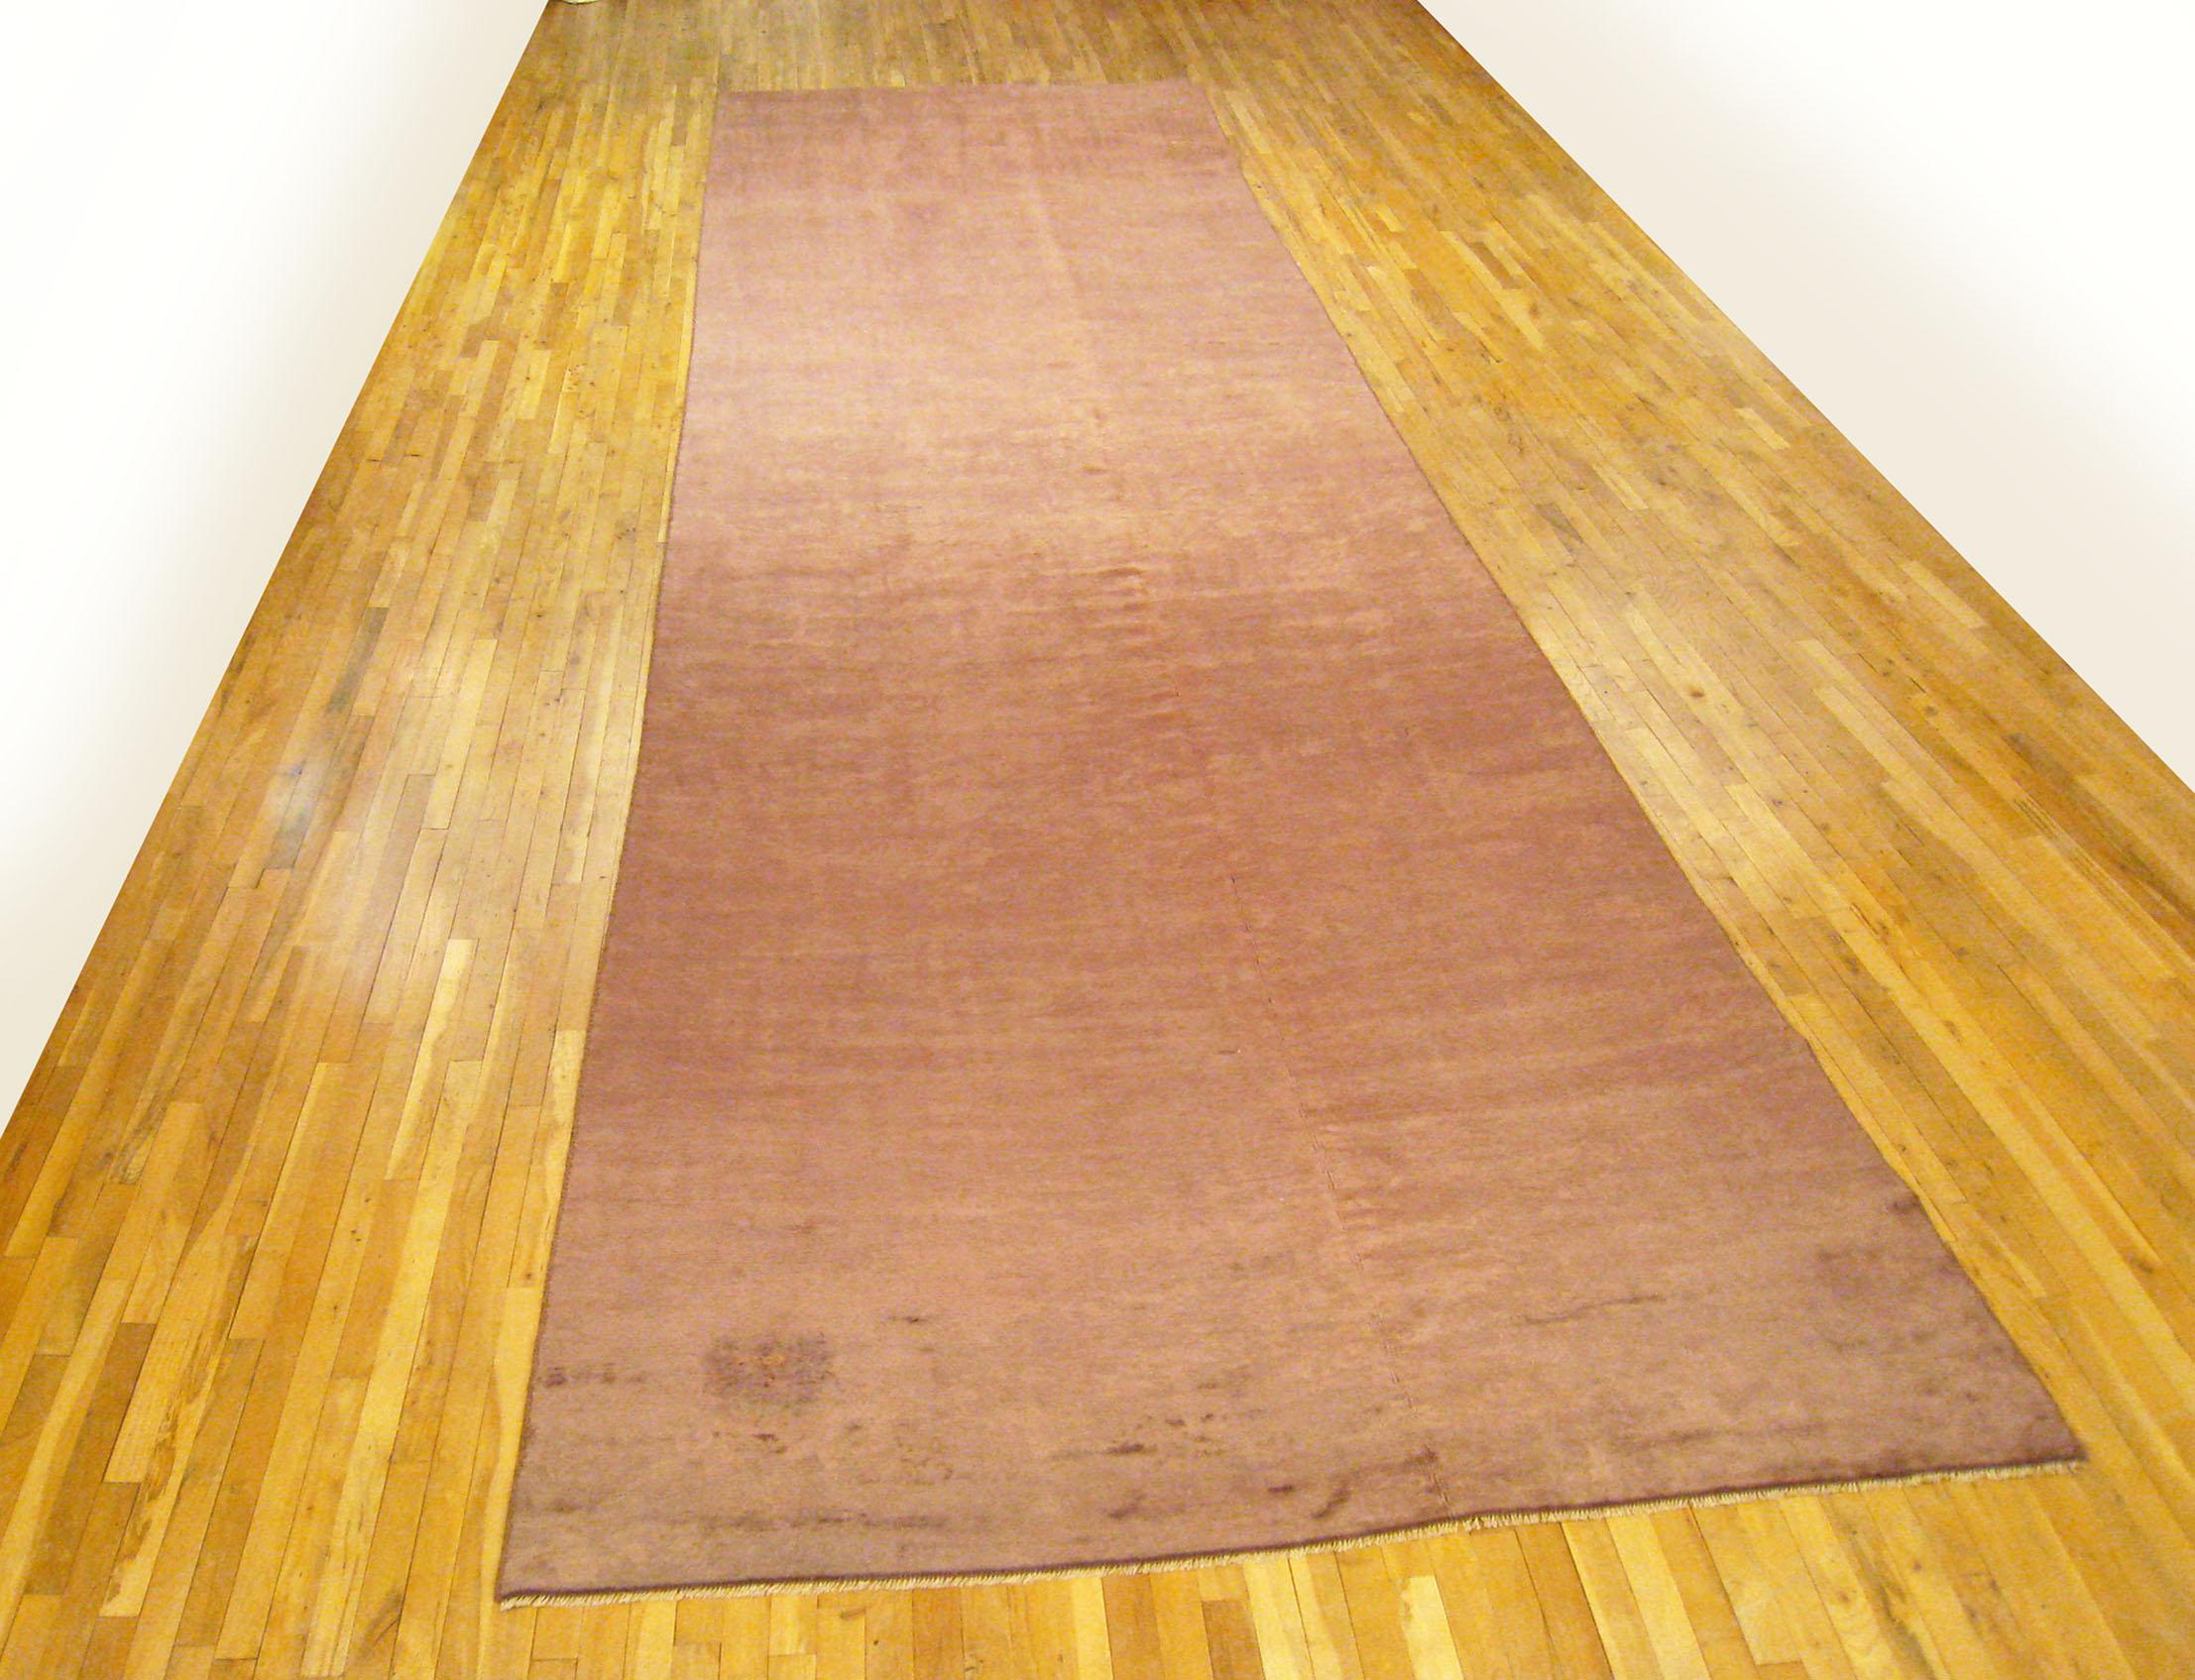 Spanischer Vintage Savonnerie-Teppich, Gallery-Format, um 1920

Ein einzigartiger spanischer Savonnerie-Orientalteppich, handgeknüpft mit weichem Wollflor. Mit einem großen mauvefarbenen offenen Feld, im Galerieformat, Größe 22' 6